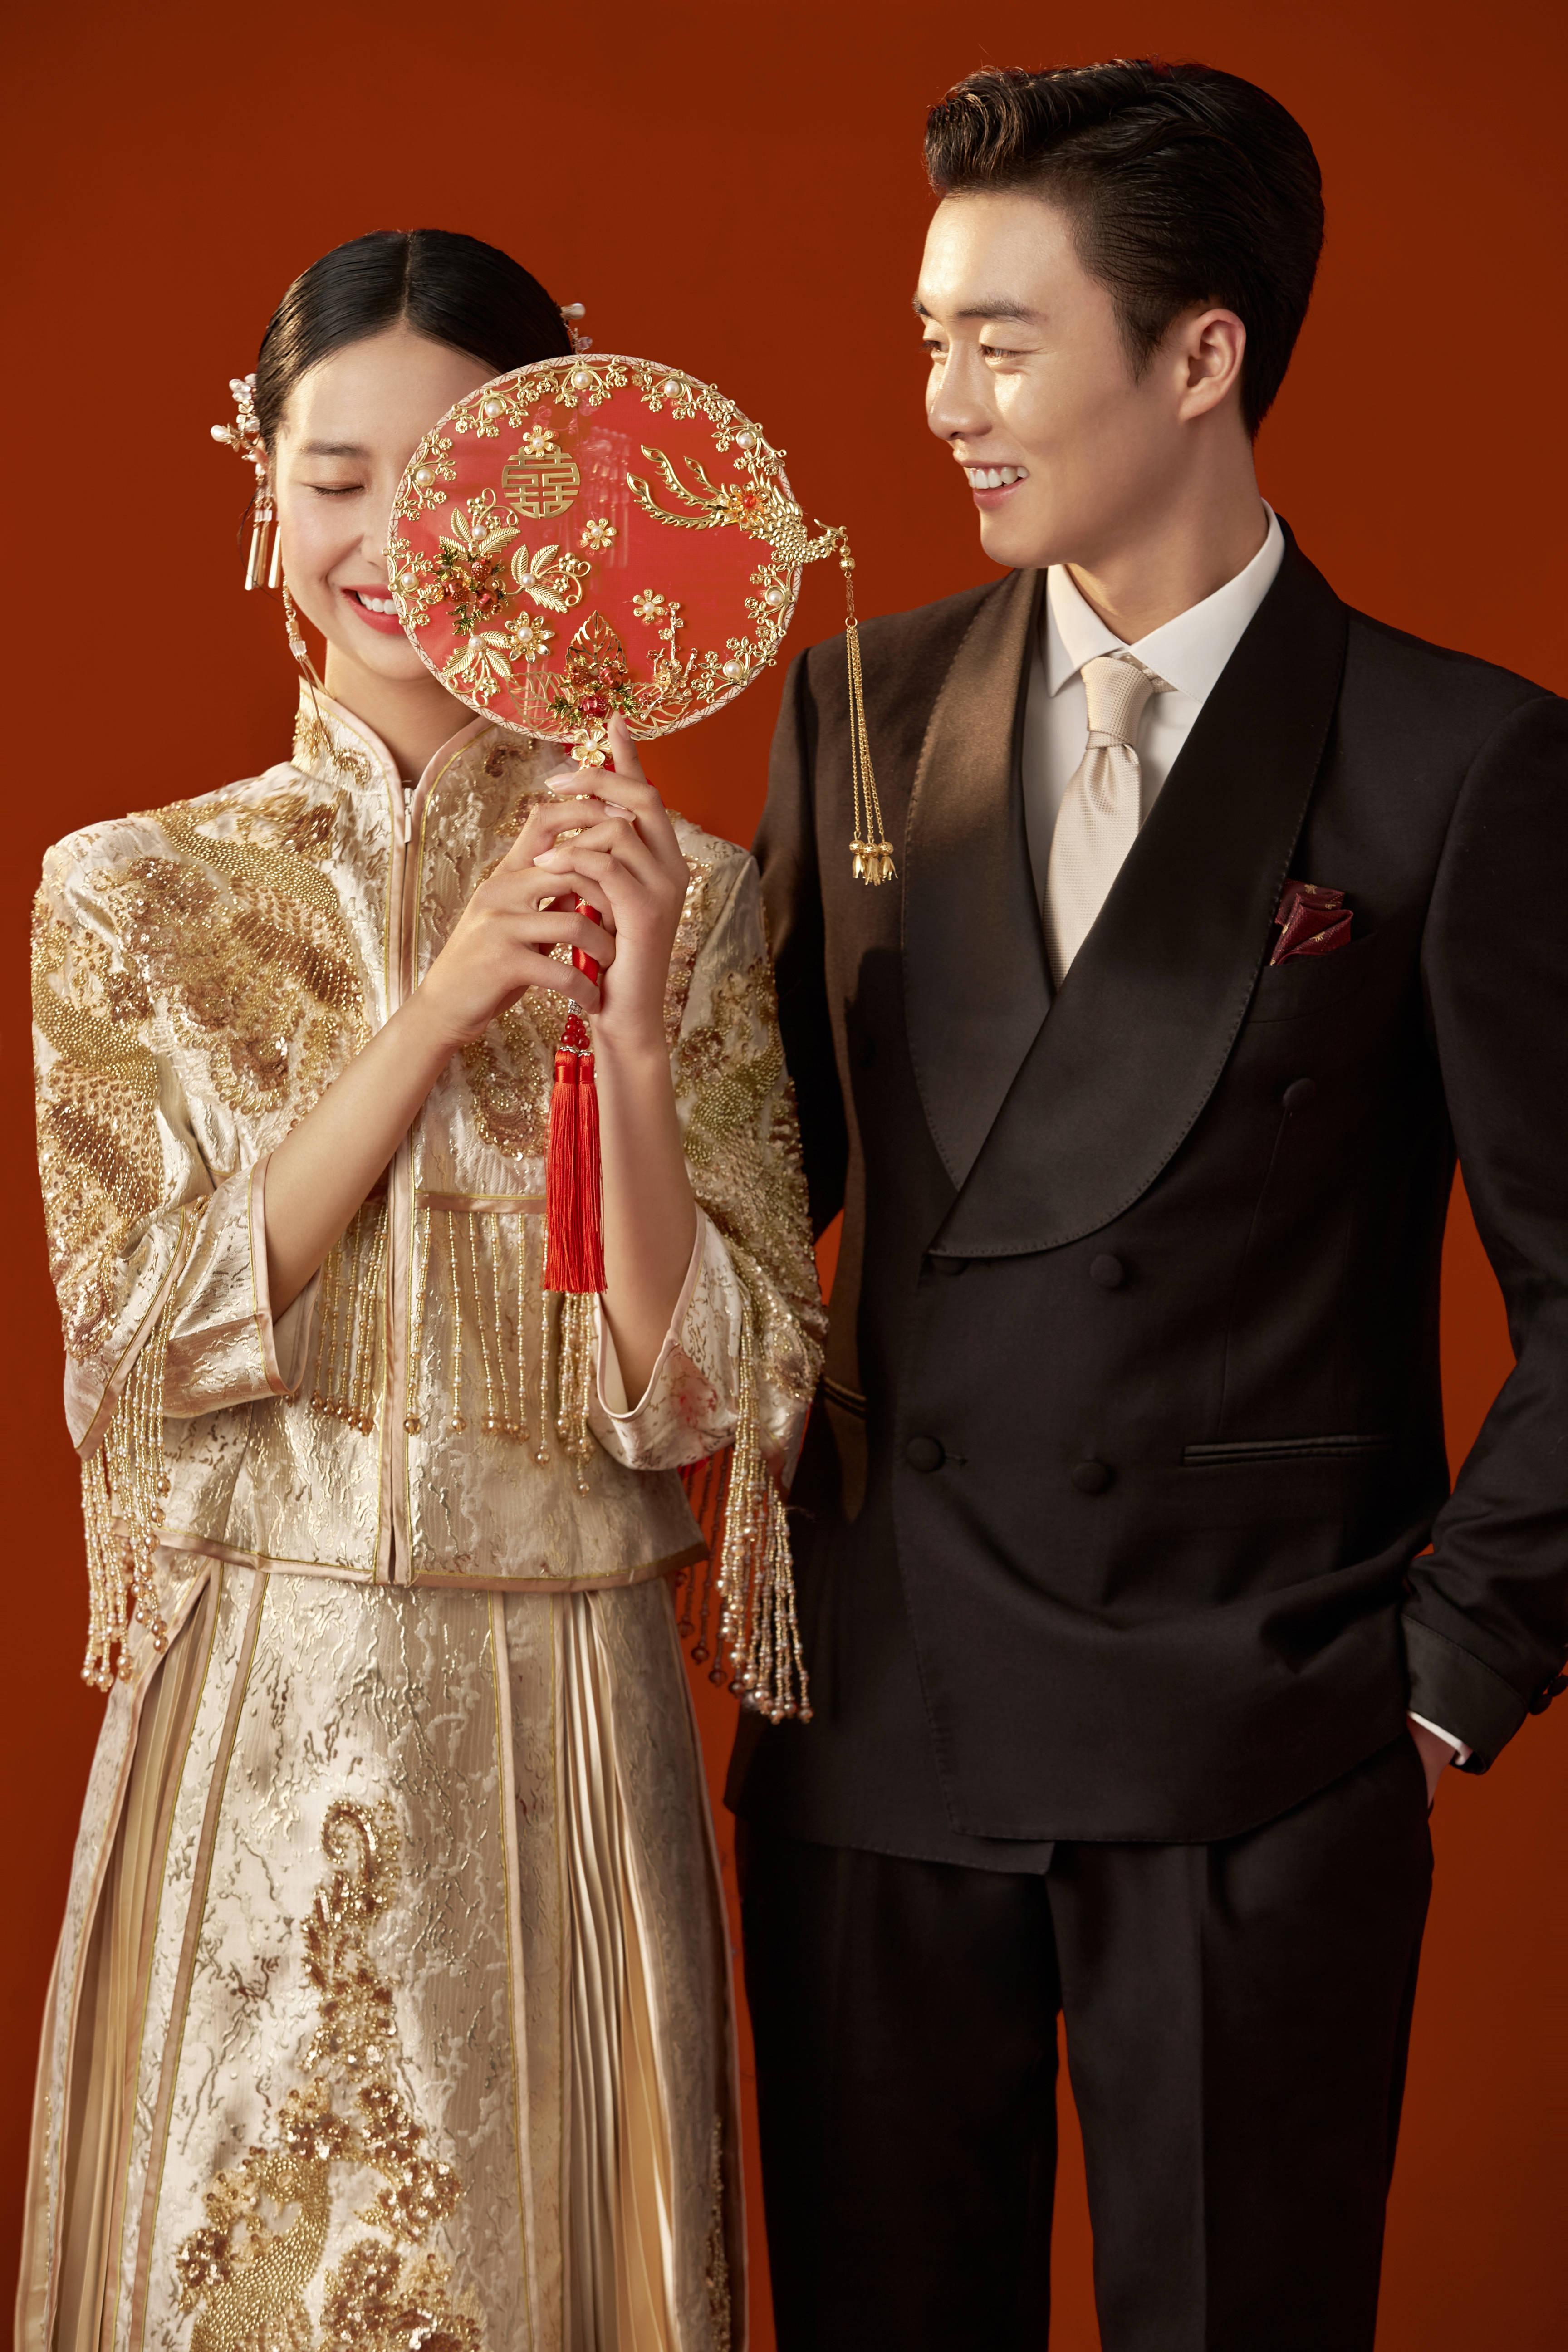 一辈子都看不腻的中式秀禾服婚纱照 